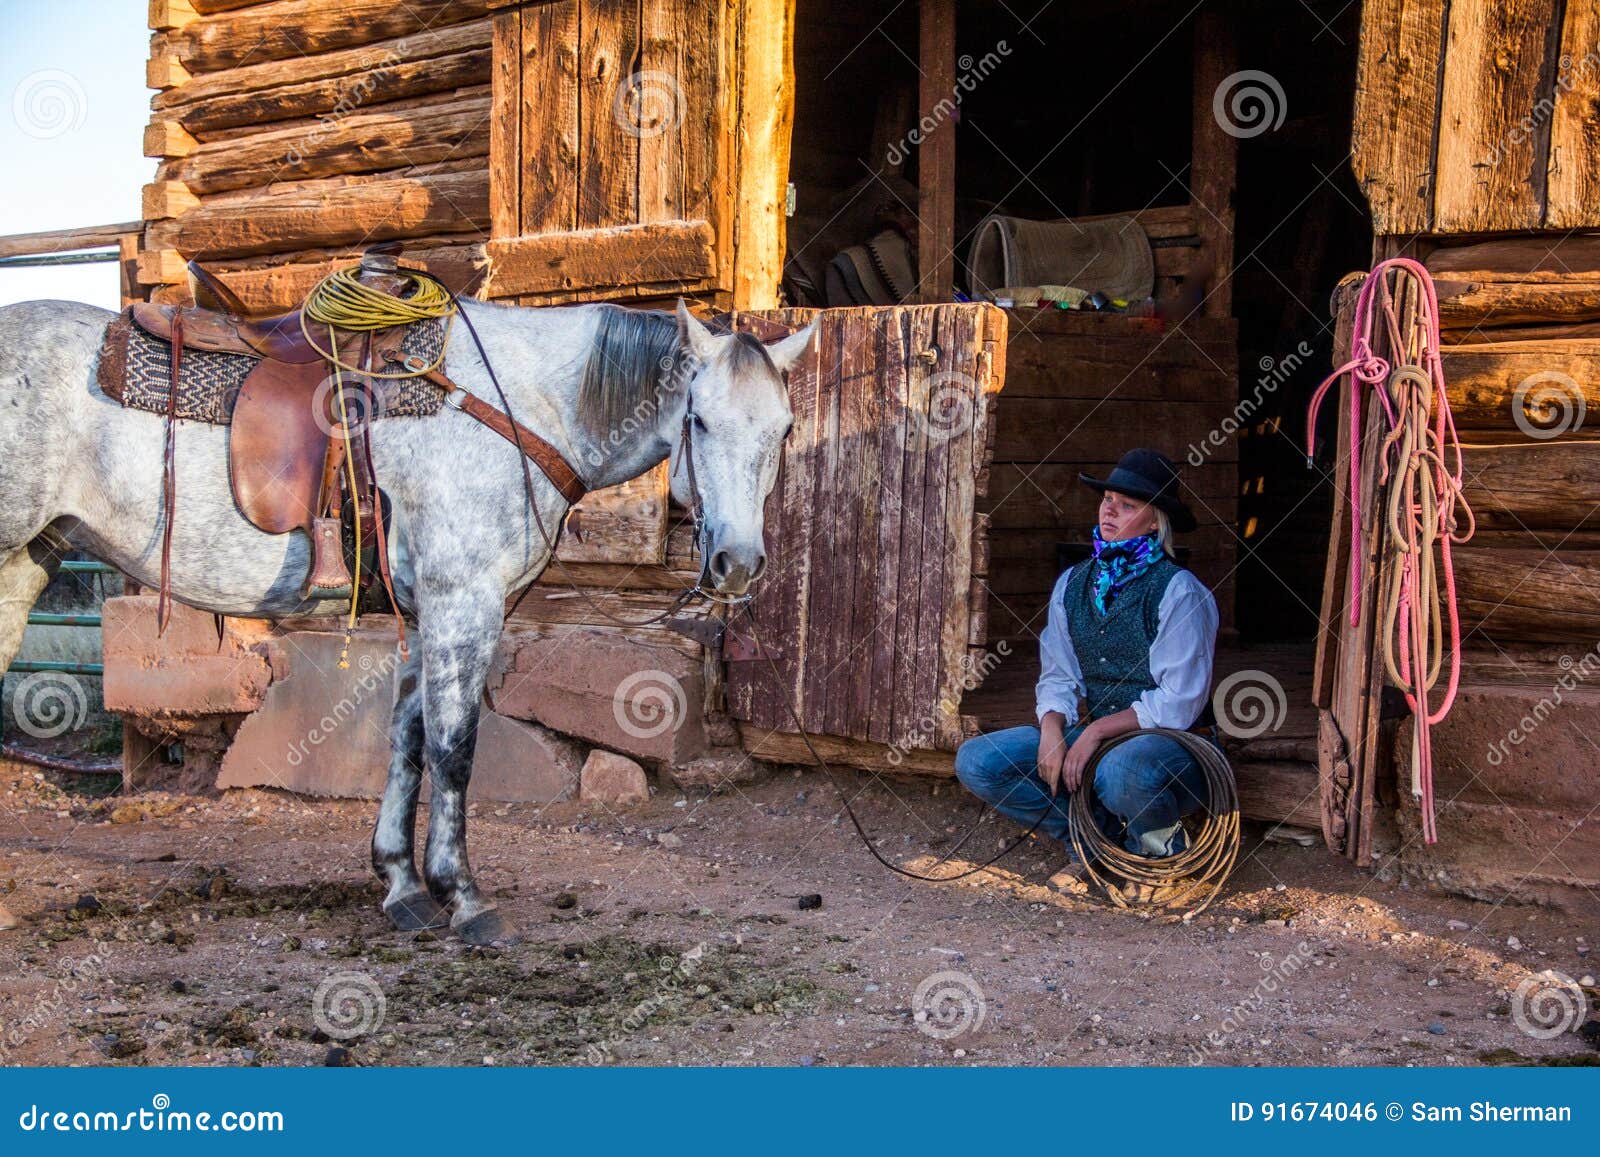 beautiful cowgirl in western scene